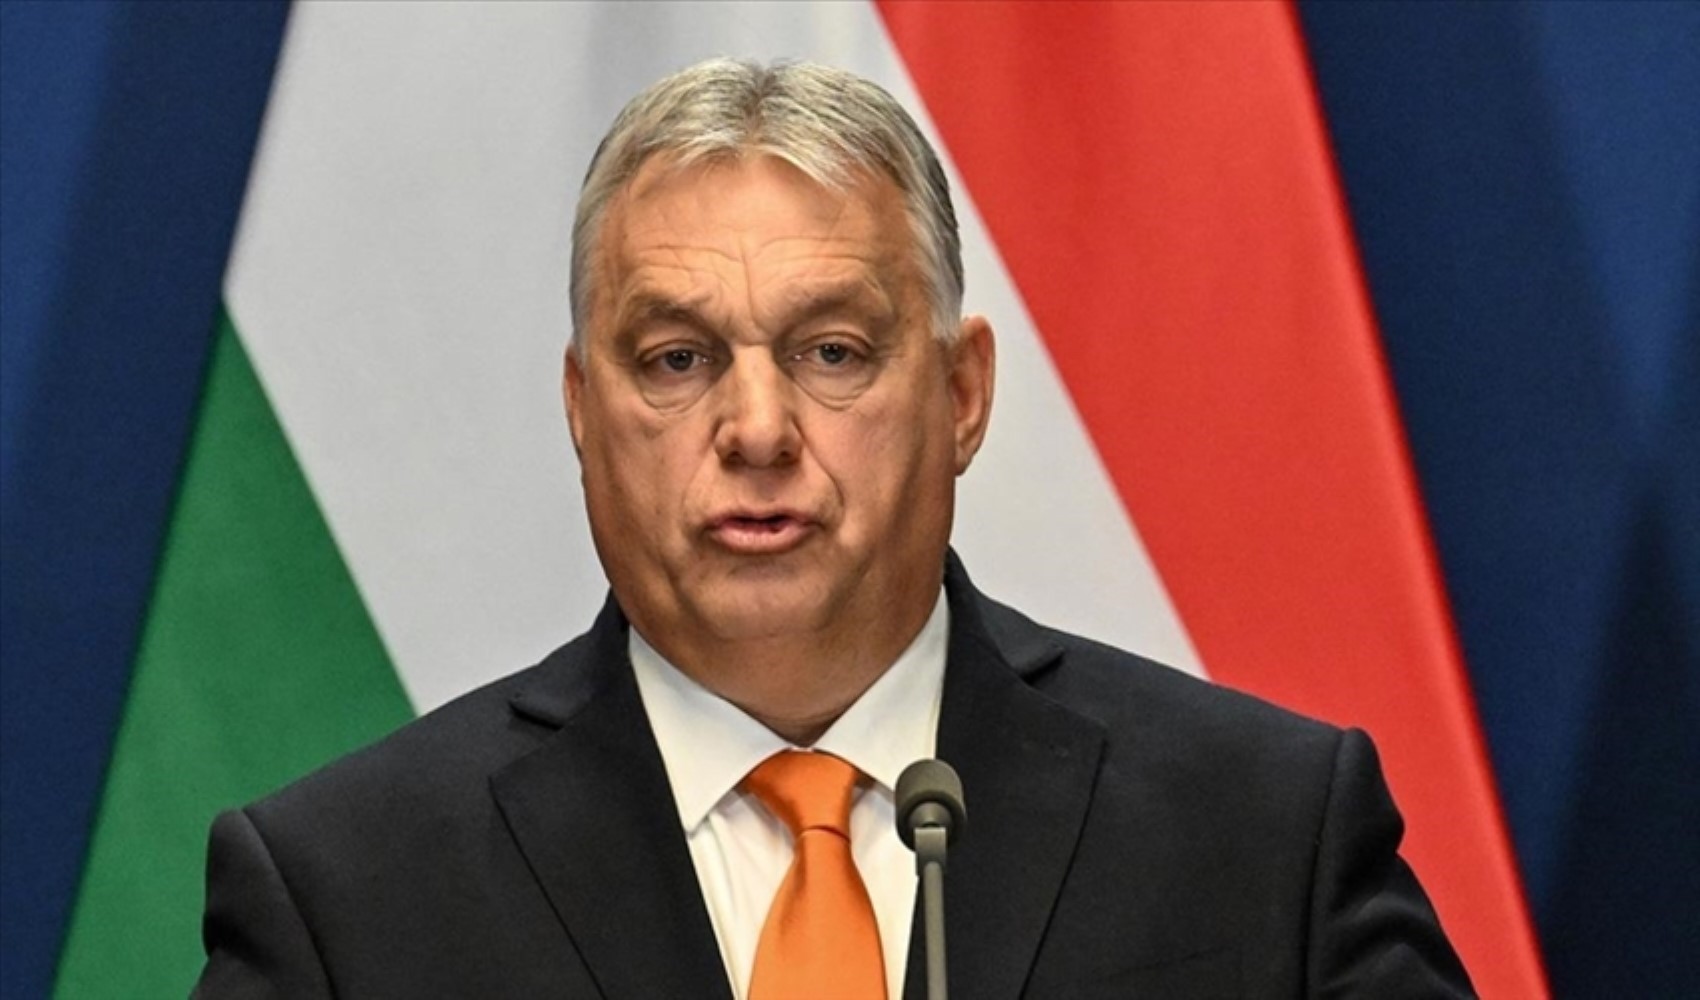 Macaristan İsveç’in NATO üyeliğini oylayacak: ABD'li senatörlerin görüşme talebi reddedildi